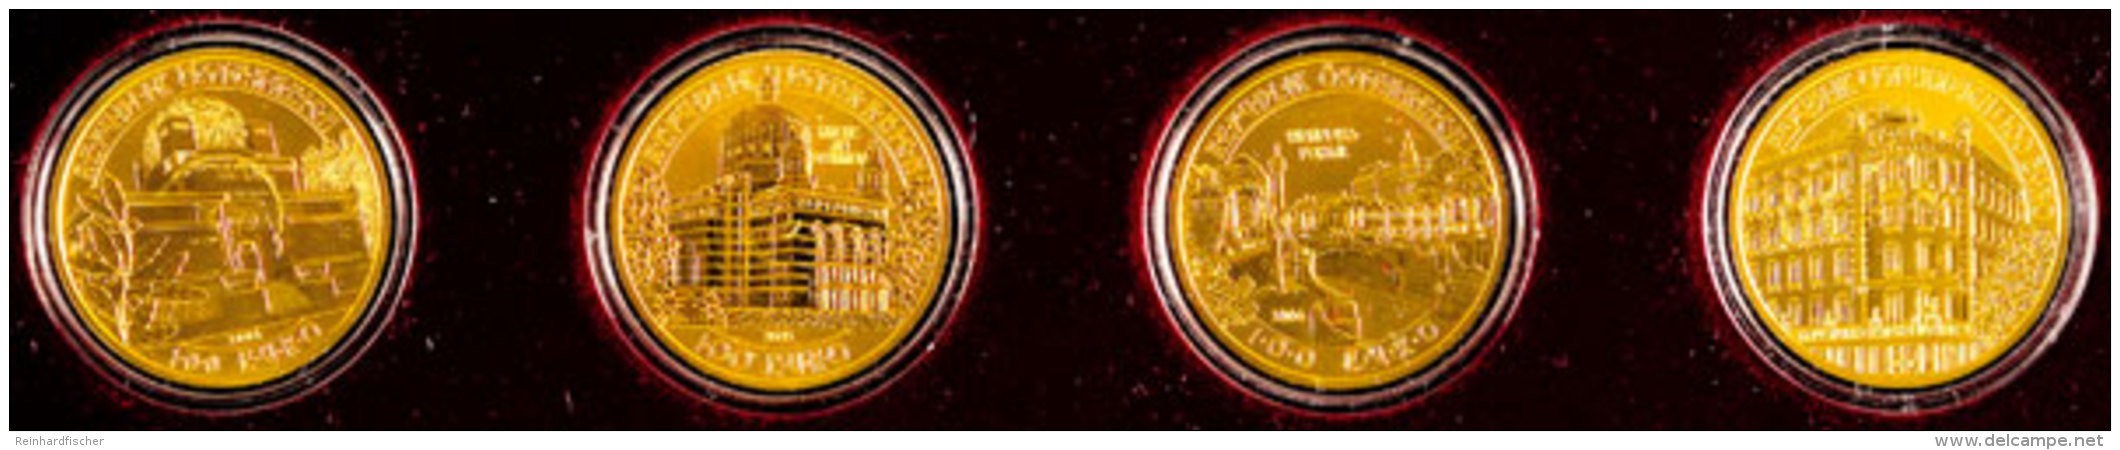 4 X 100 Euro, Gold, 2004-2007, Serie "Der Wiener Jugendstil", Jeweils 16g Fein, Mit Zertifikaten In Massiver... - Austria